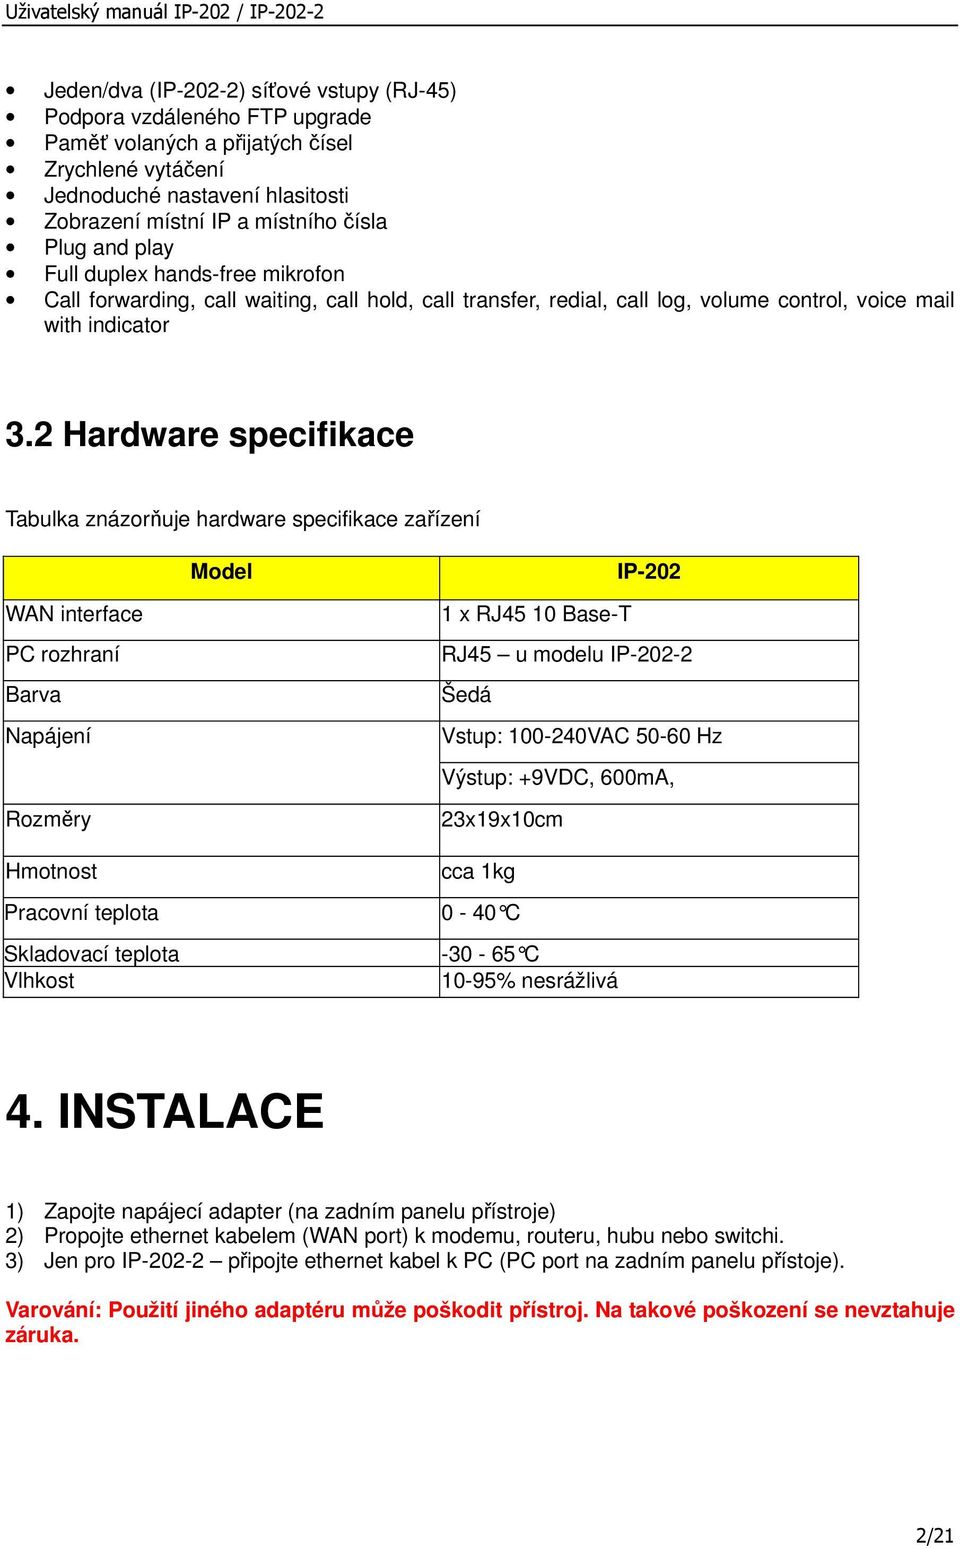 2 Hardware specifikace Tabulka znázorňuje hardware specifikace zařízení Model IP-202 WAN interface PC rozhraní Barva Napájení Rozměry 1 x RJ45 10 Base-T RJ45 u modelu IP-202-2 Šedá Vstup: 100-240VAC